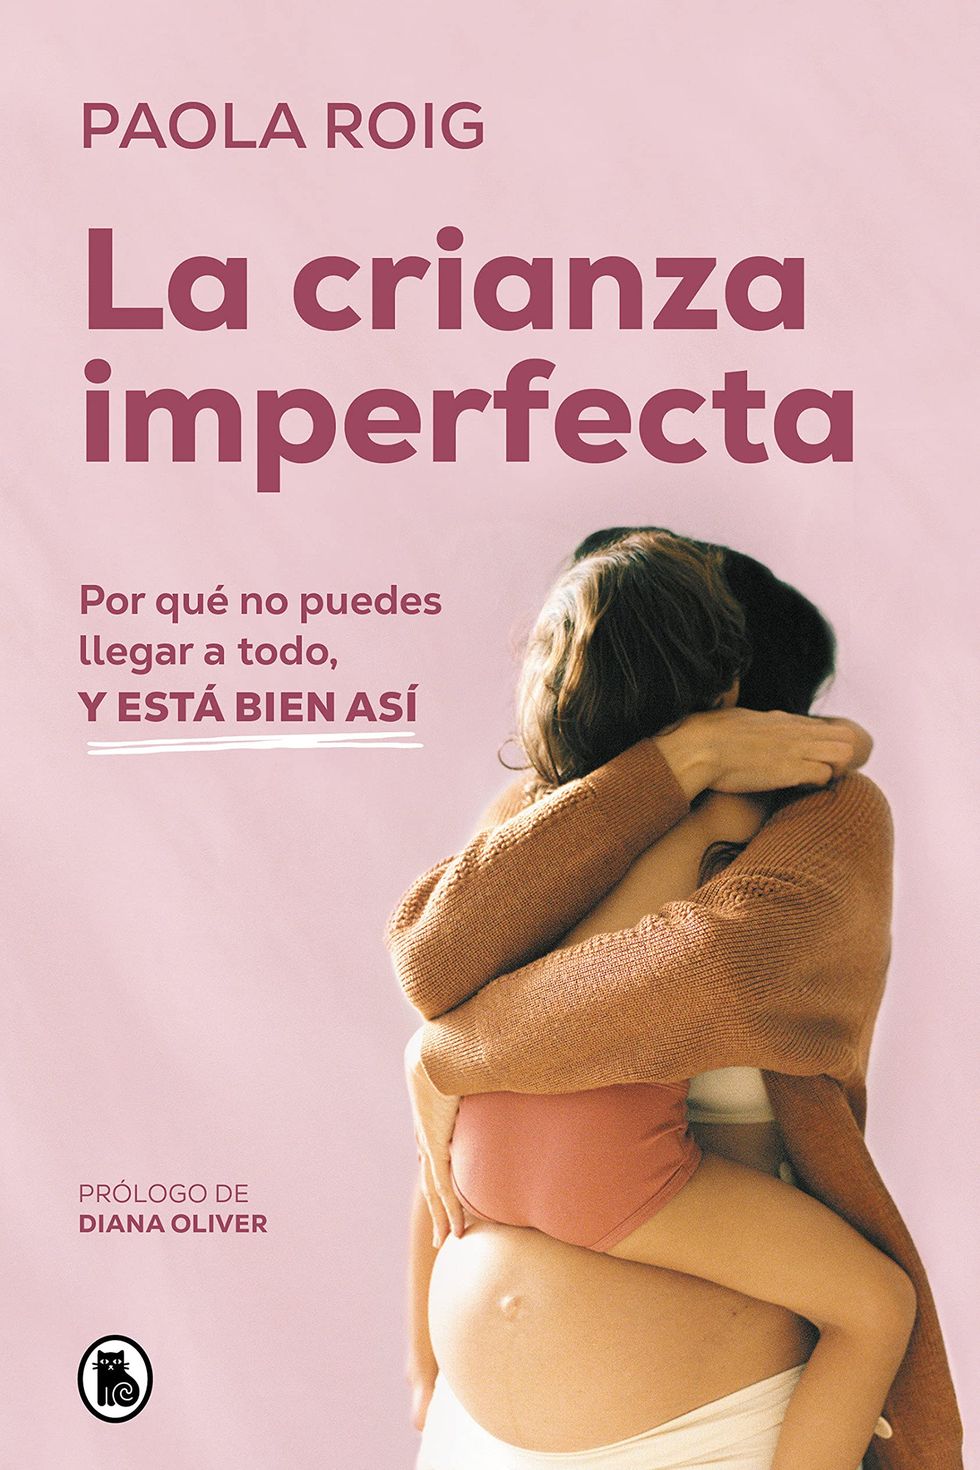 Ser mamá: Guía Del Embarazo, Parto Y Posparto Con Evidencia Y